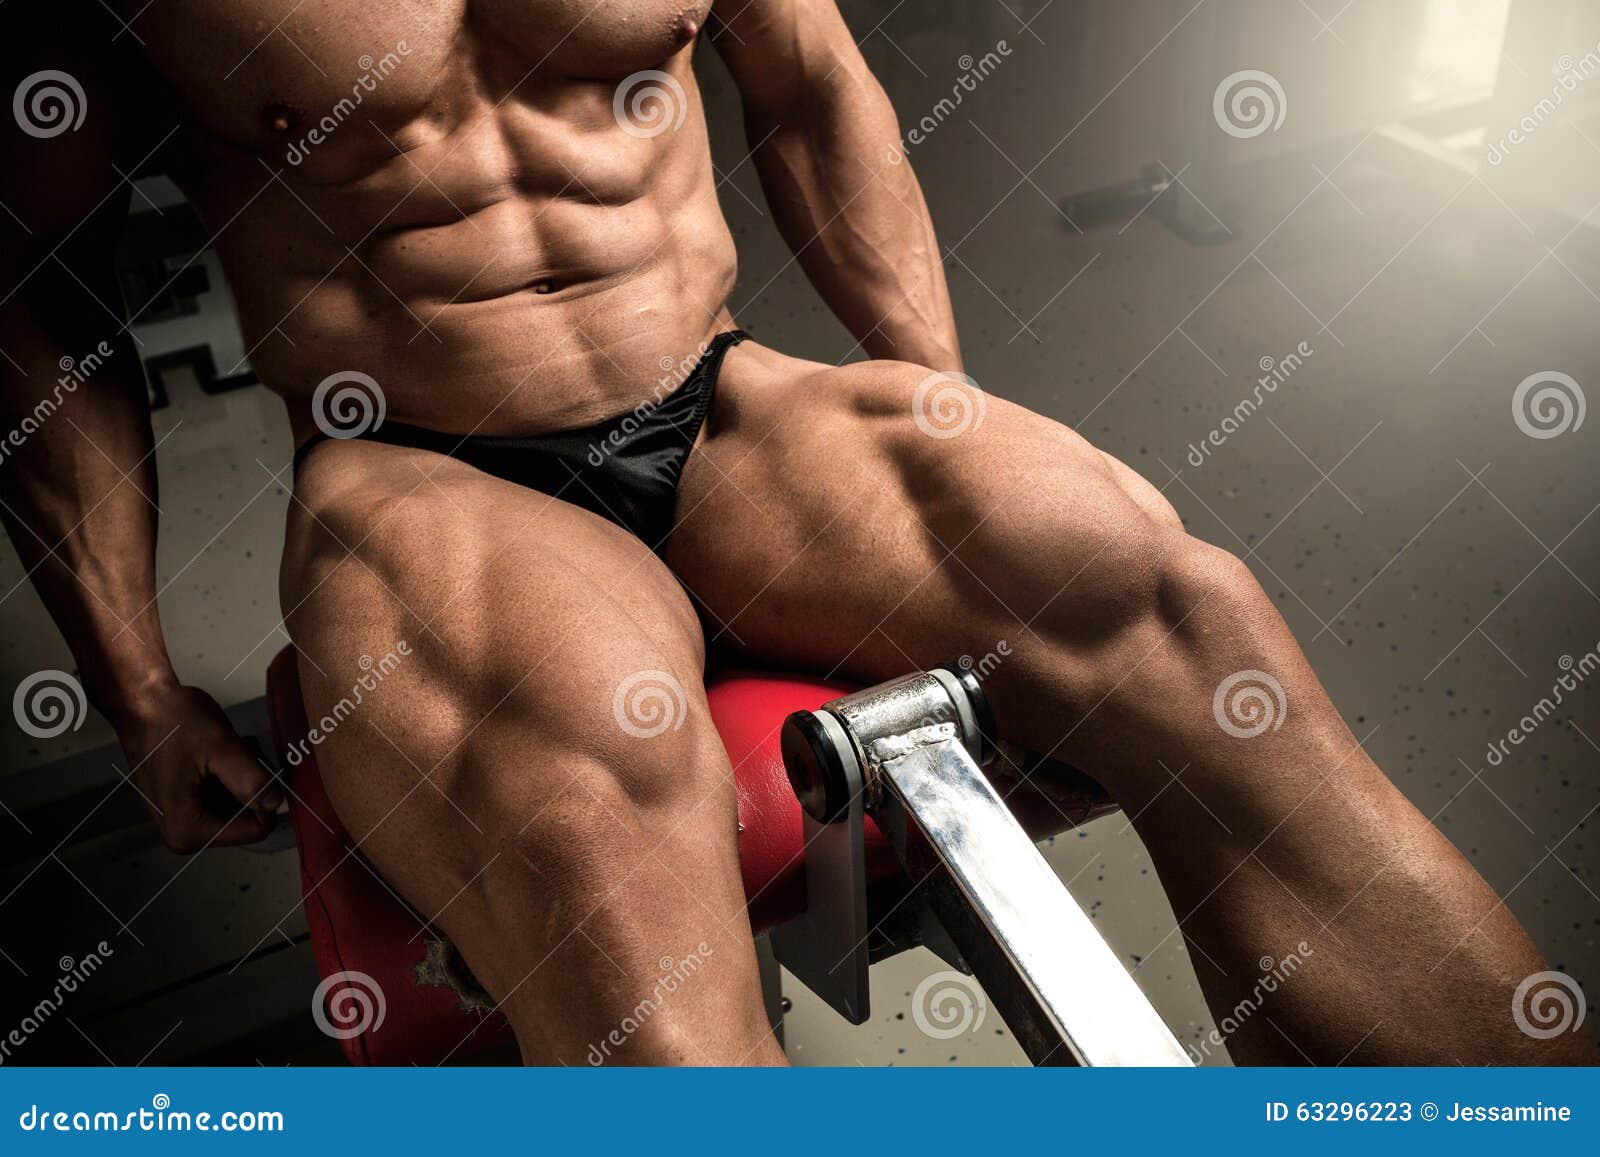 Bodybuilding Quads